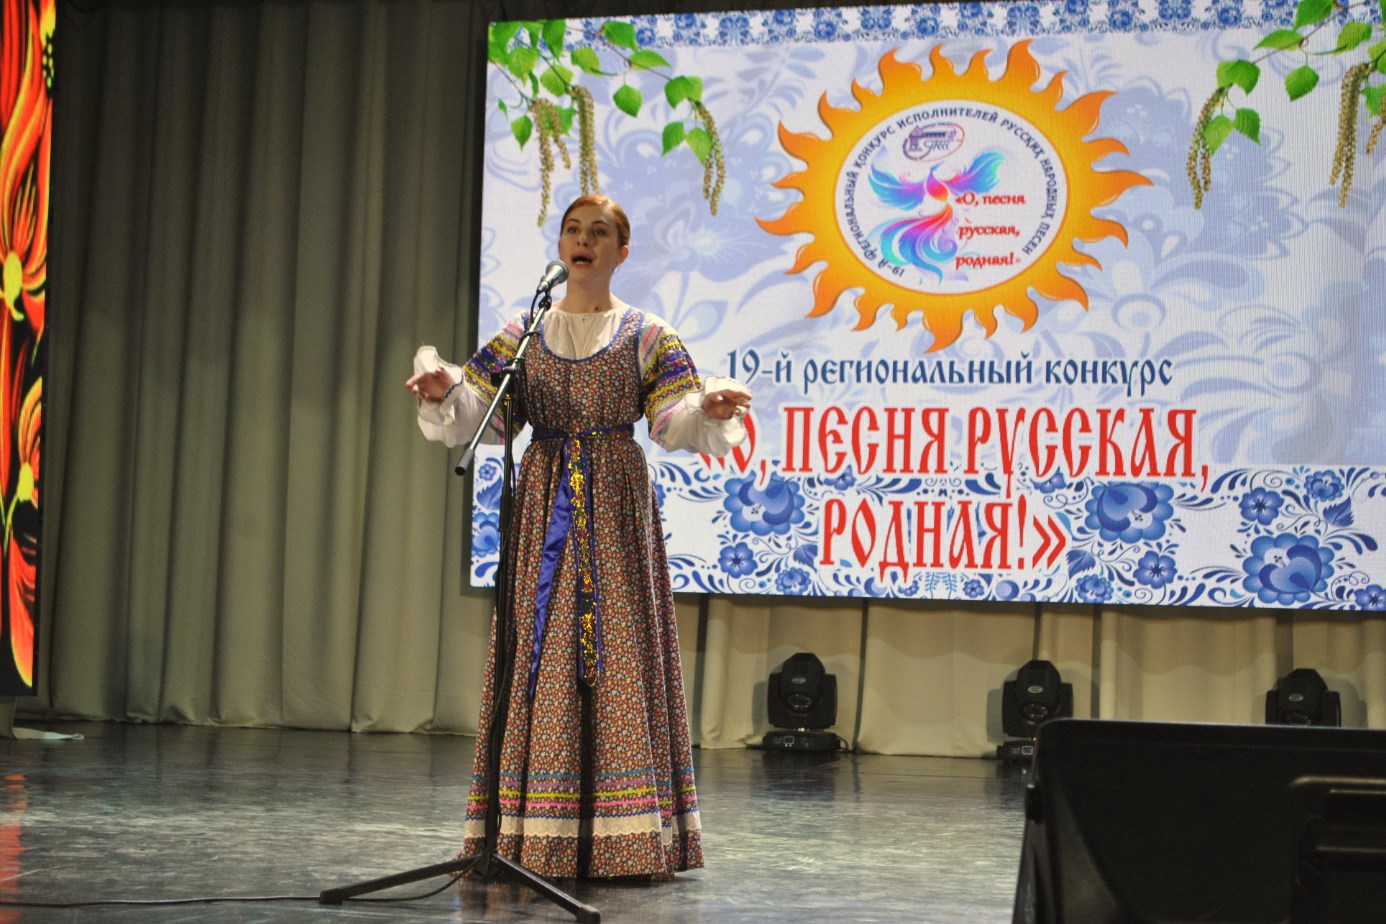 Региональный конкурс это какой. ПККК конкурс о песня русская родная.